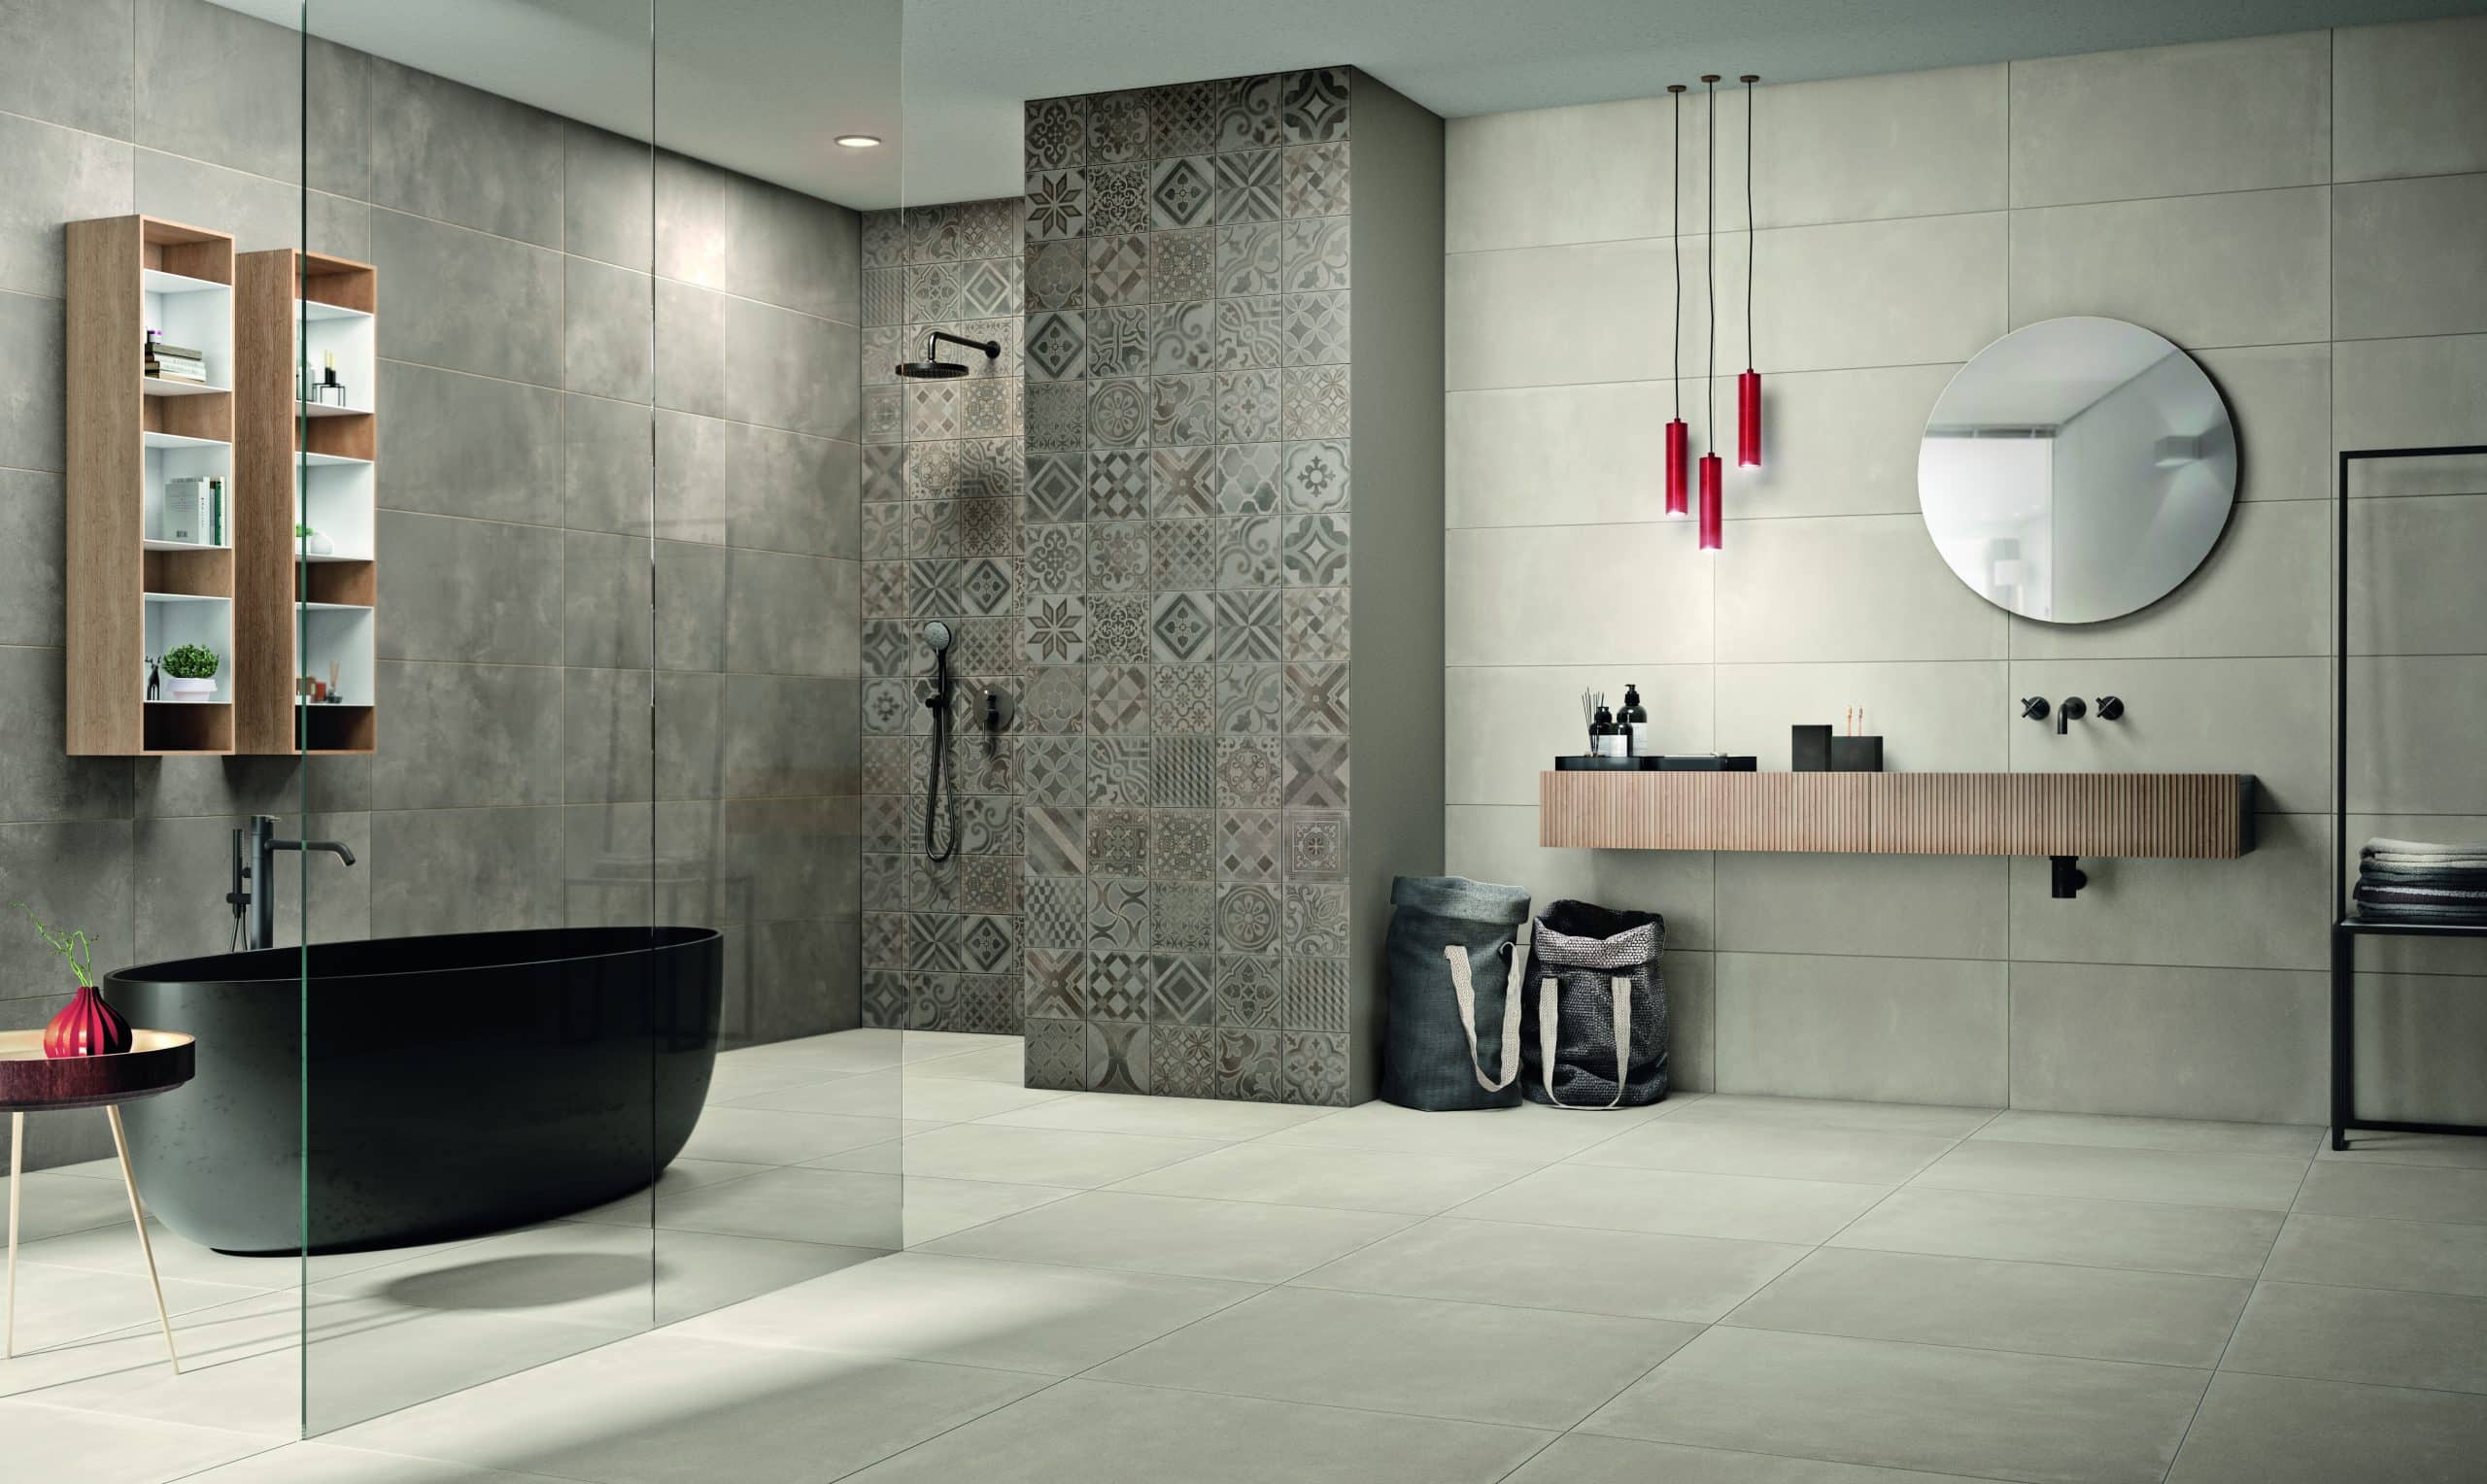 Fliesendorf präsentiert ein Badezimmer in hellen beige/grau Tönen mit einer schwarzen freistehenden Badewanne, mehreren Regalen, einem Waschtisch inklusive Waschbecken.